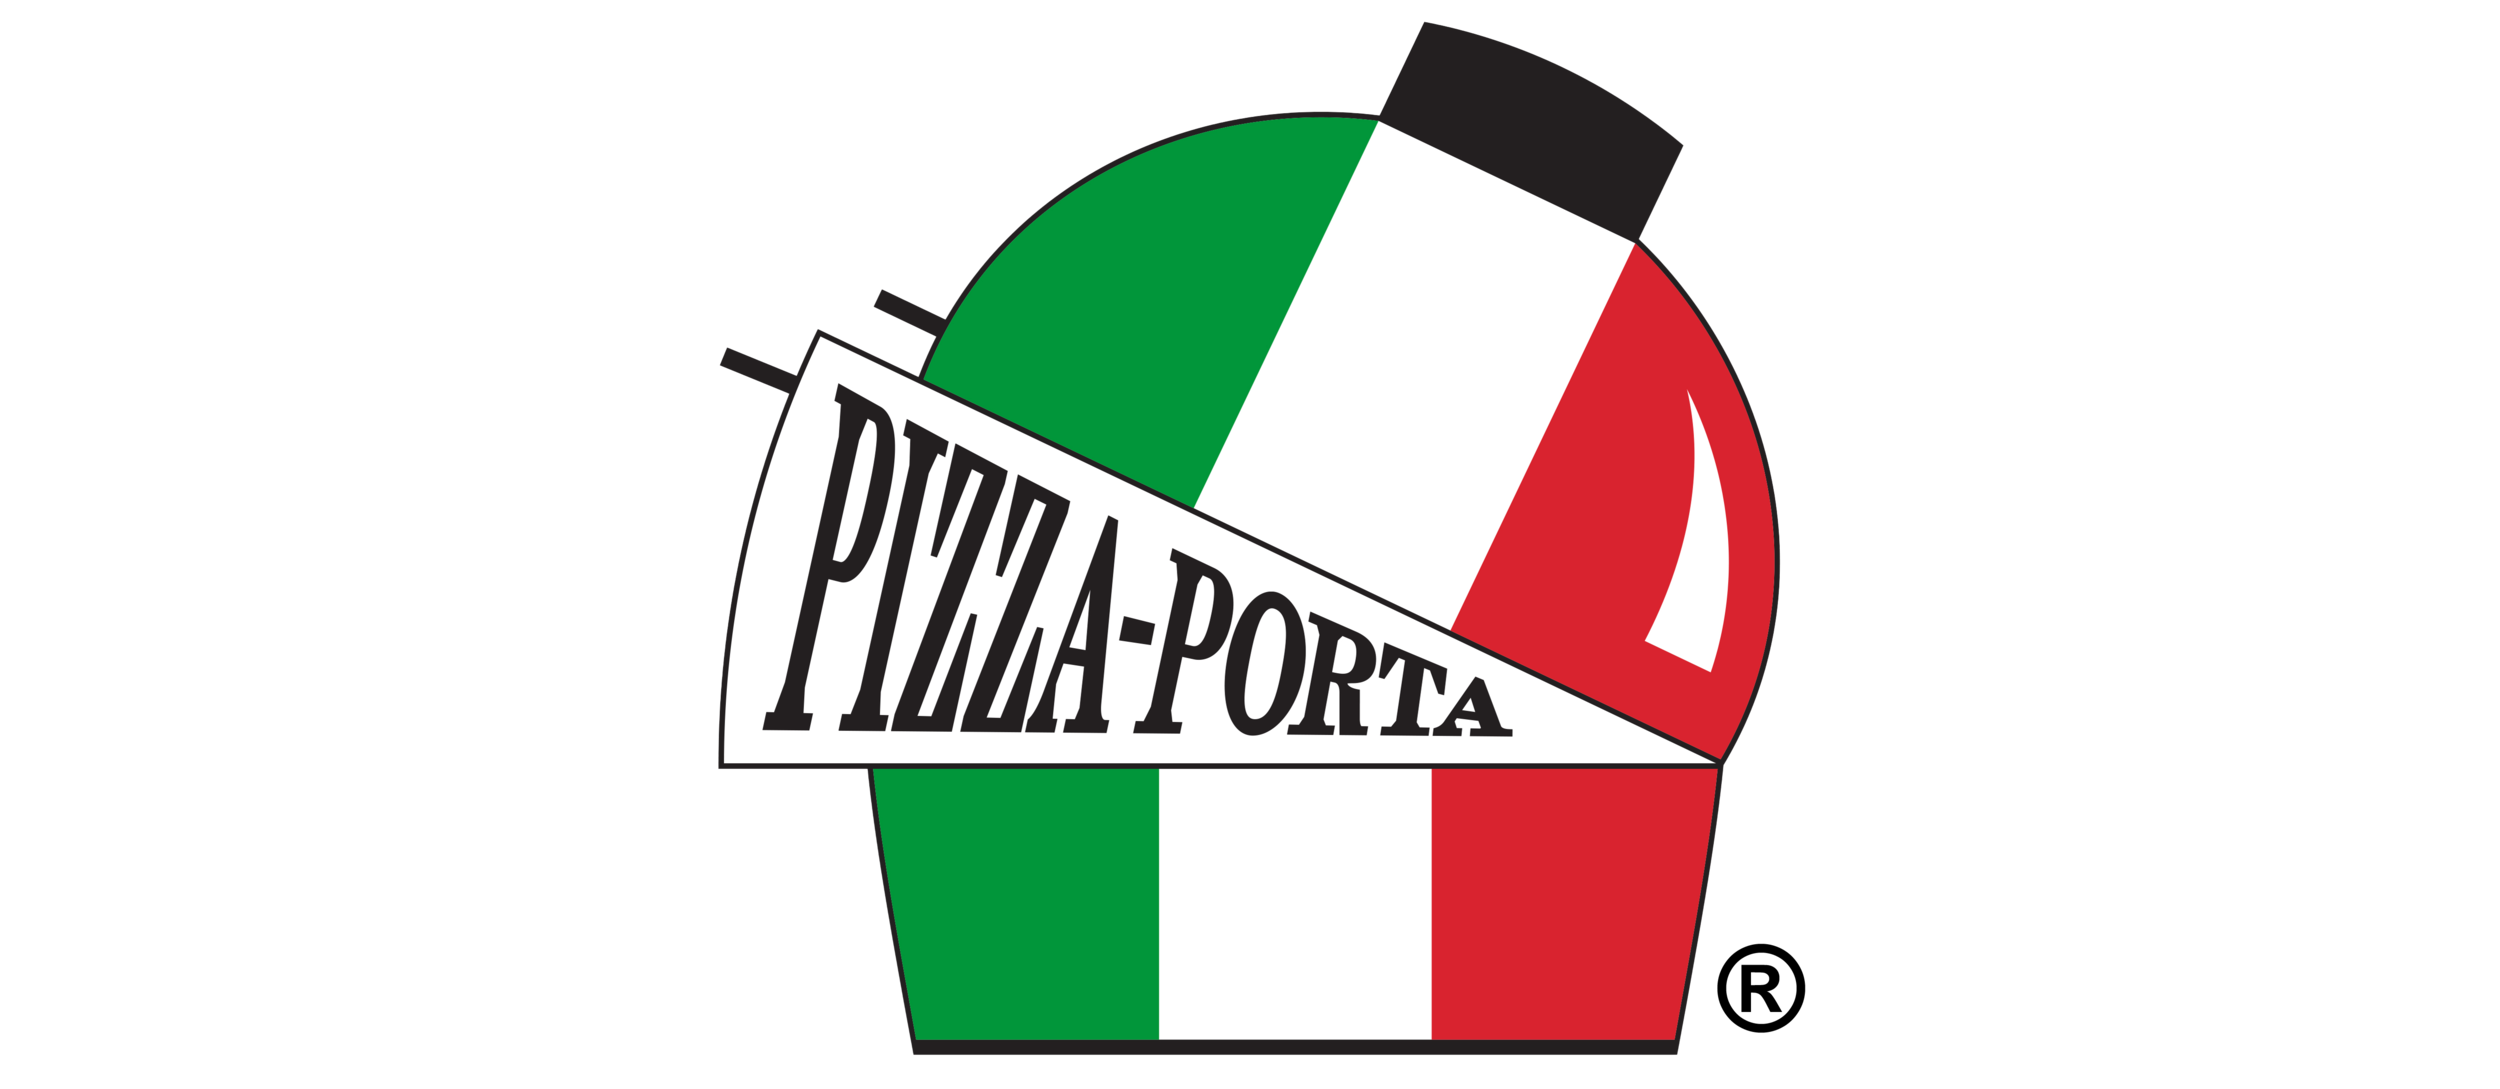 Pizza-Porta